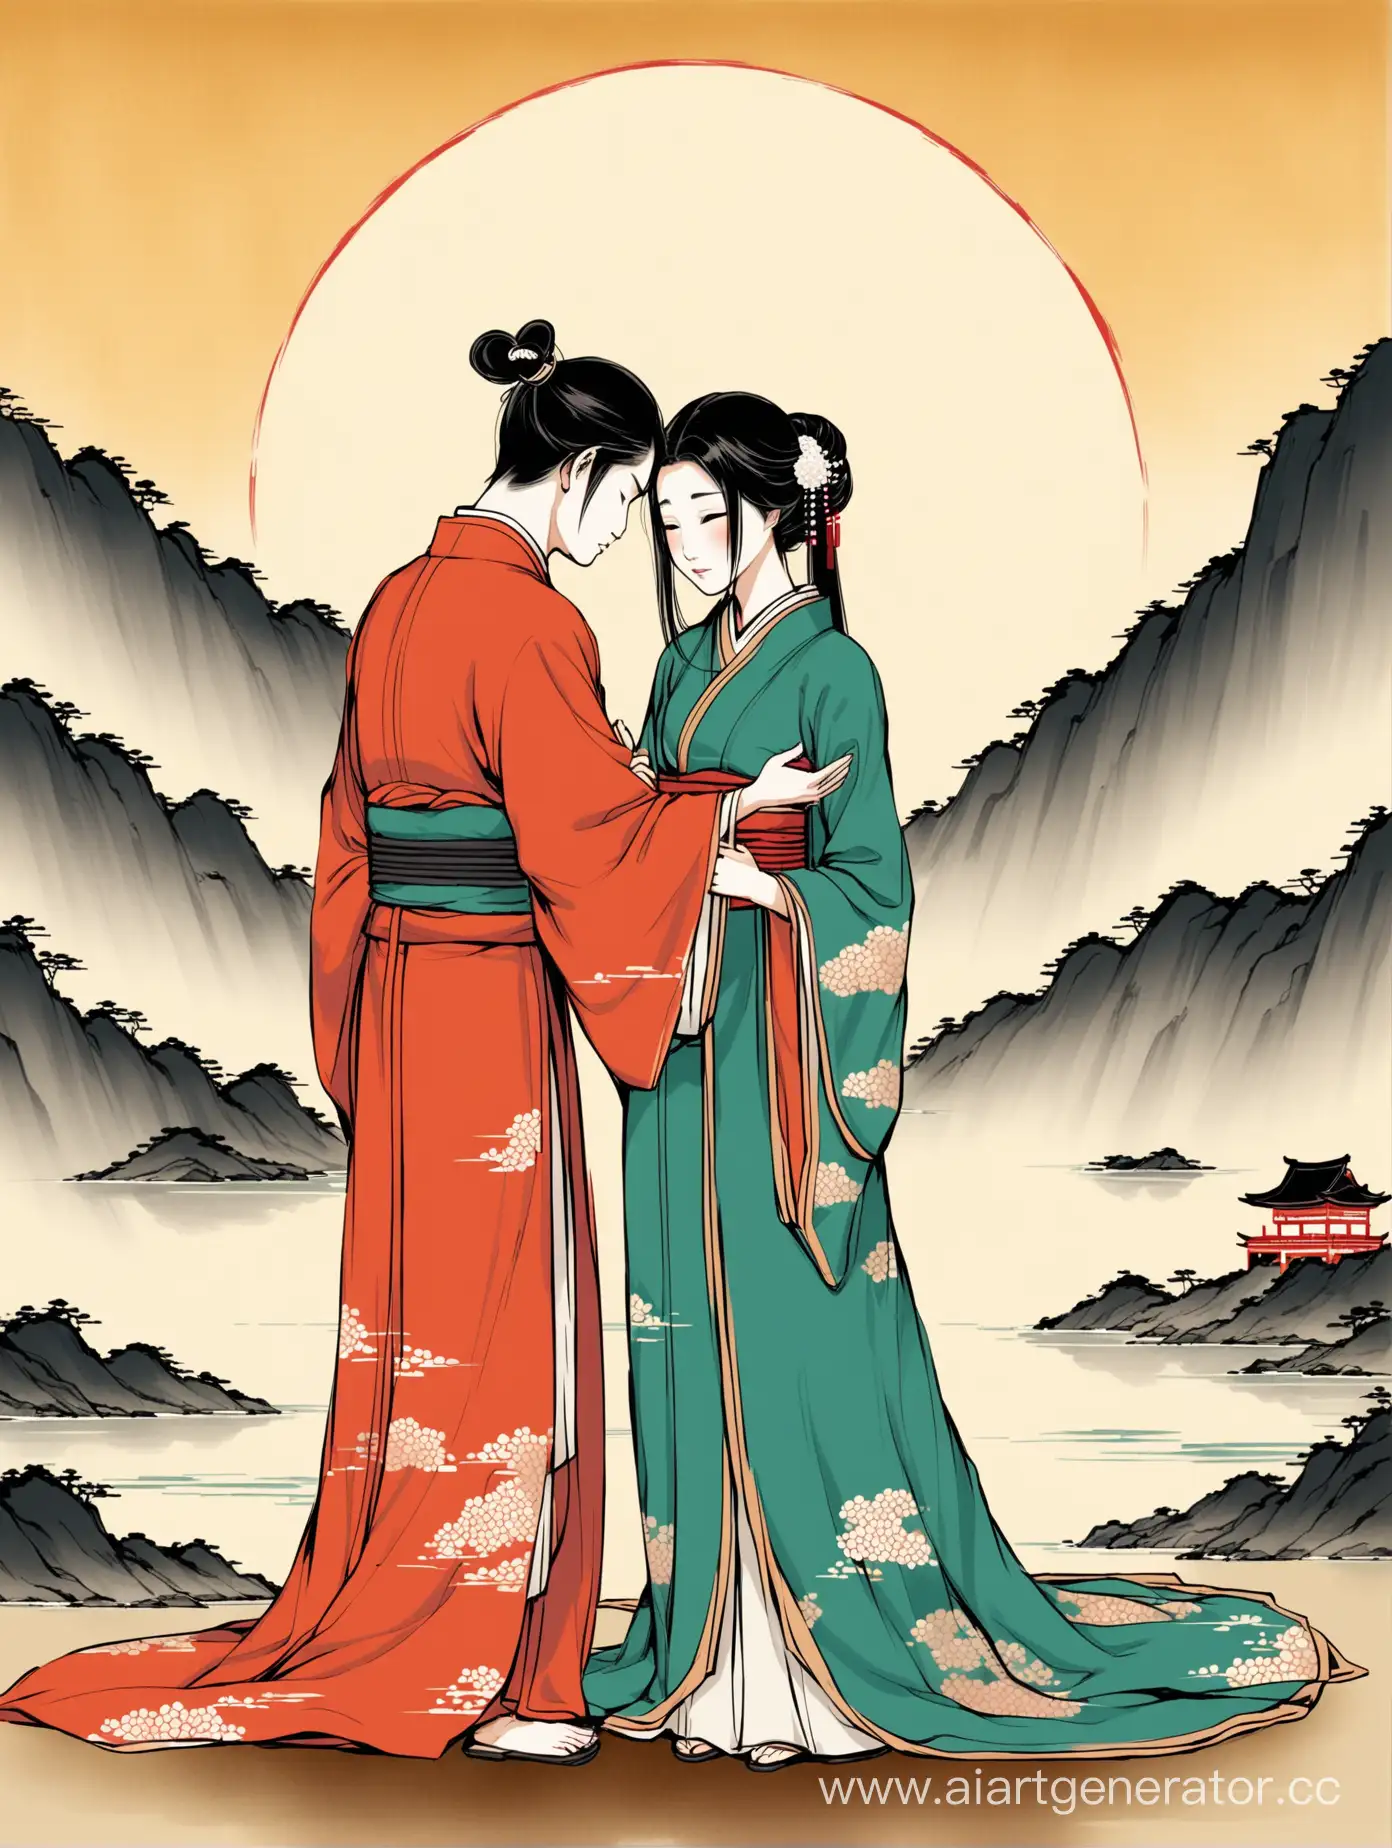 Грустная азиатская пара прощается друг с другом, в стиле традиционной азиатской живописи